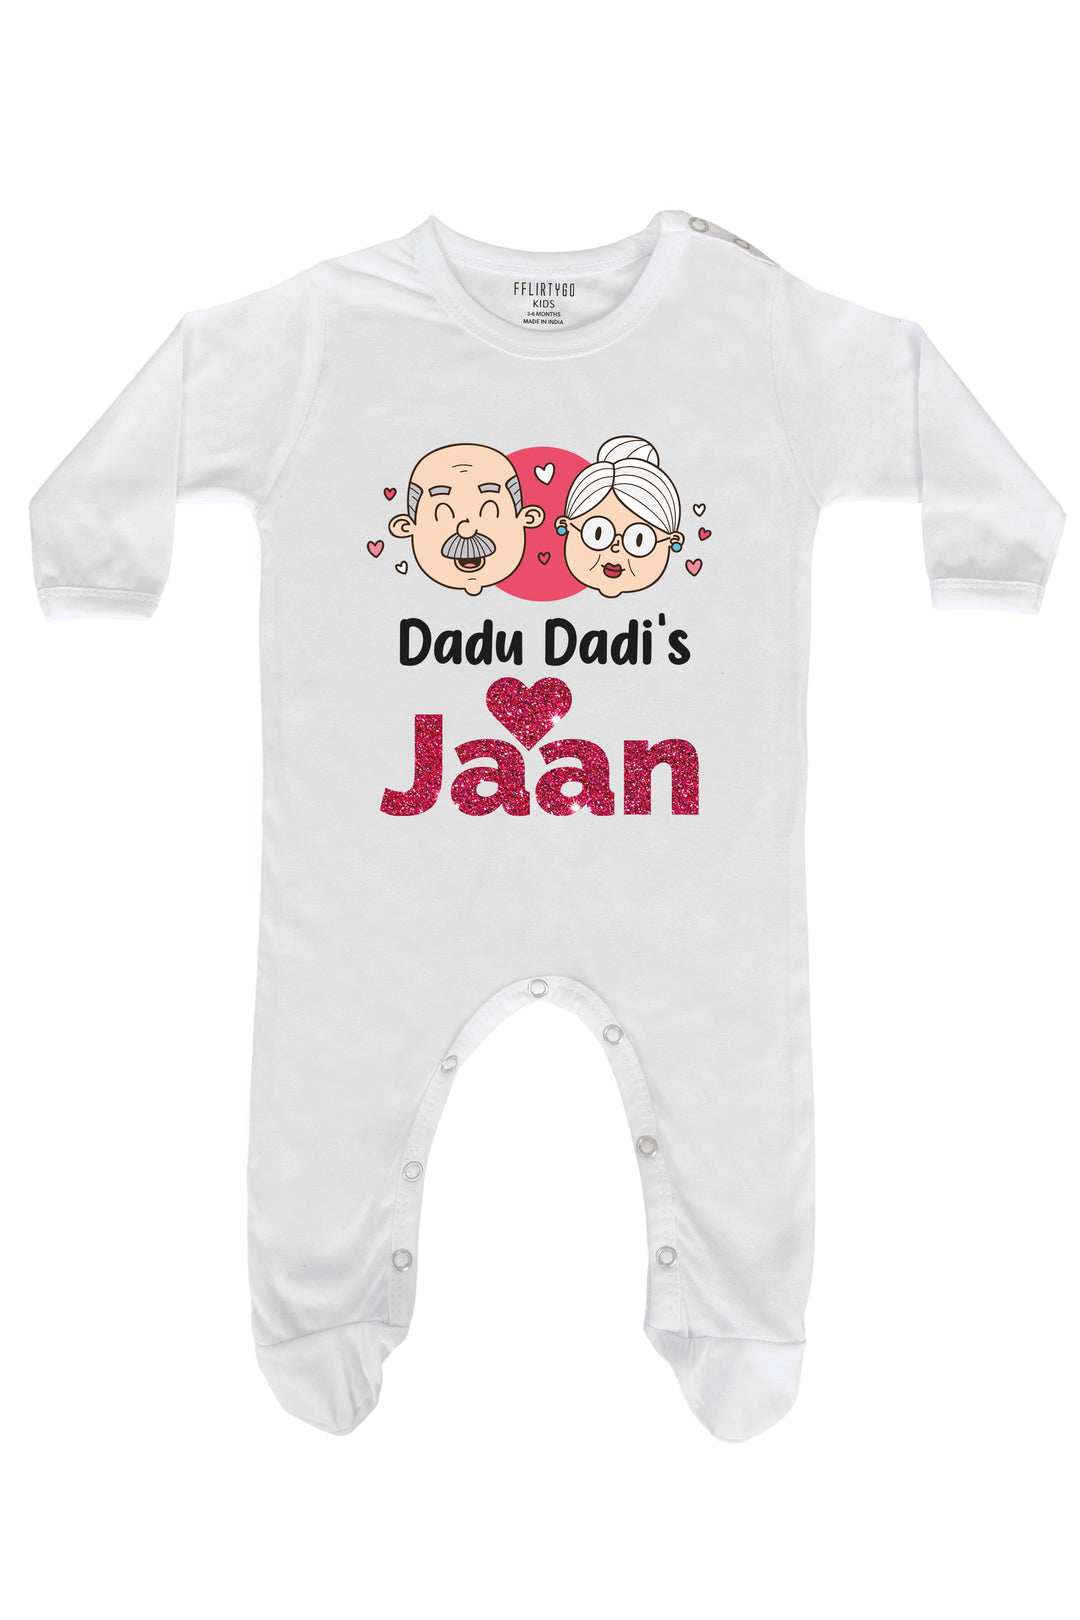 Dadu Dadi's Jaan Baby Romper | Onesies